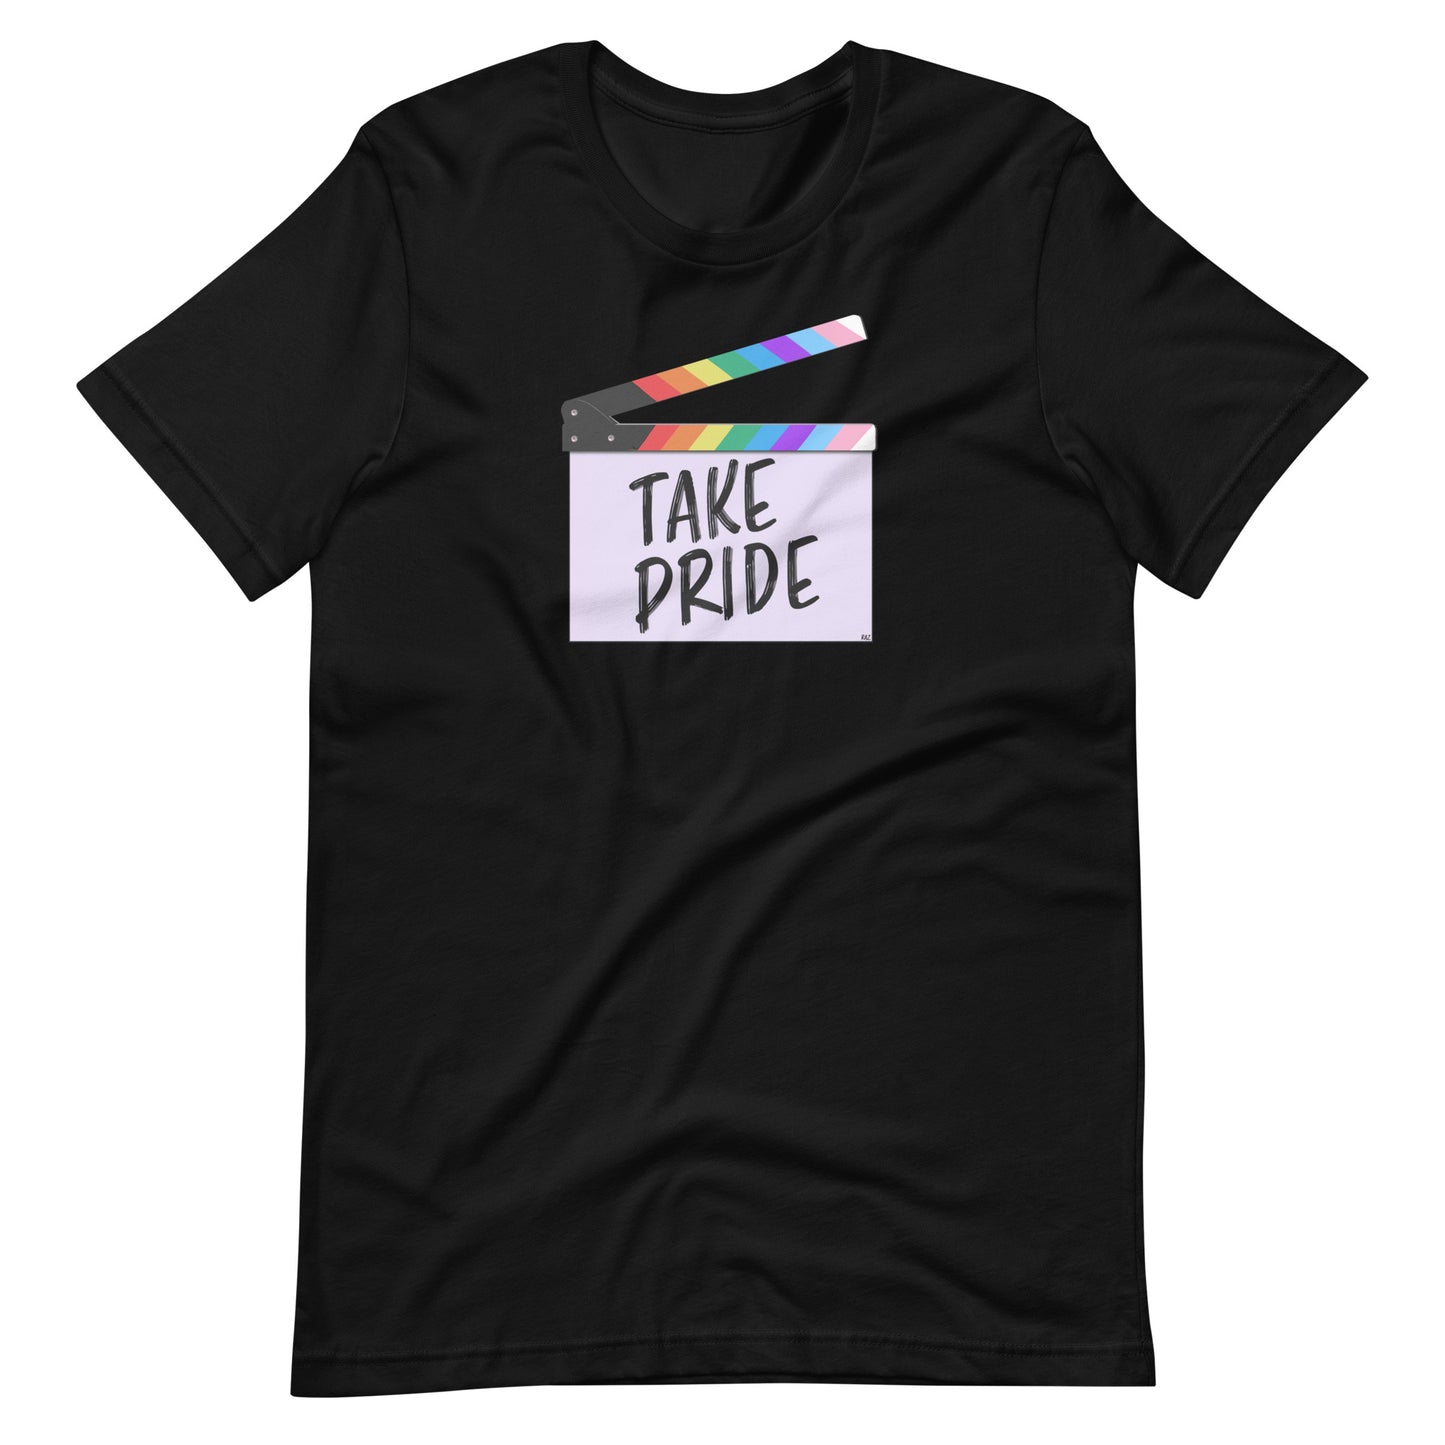 Take Pride Unisex T-shirt